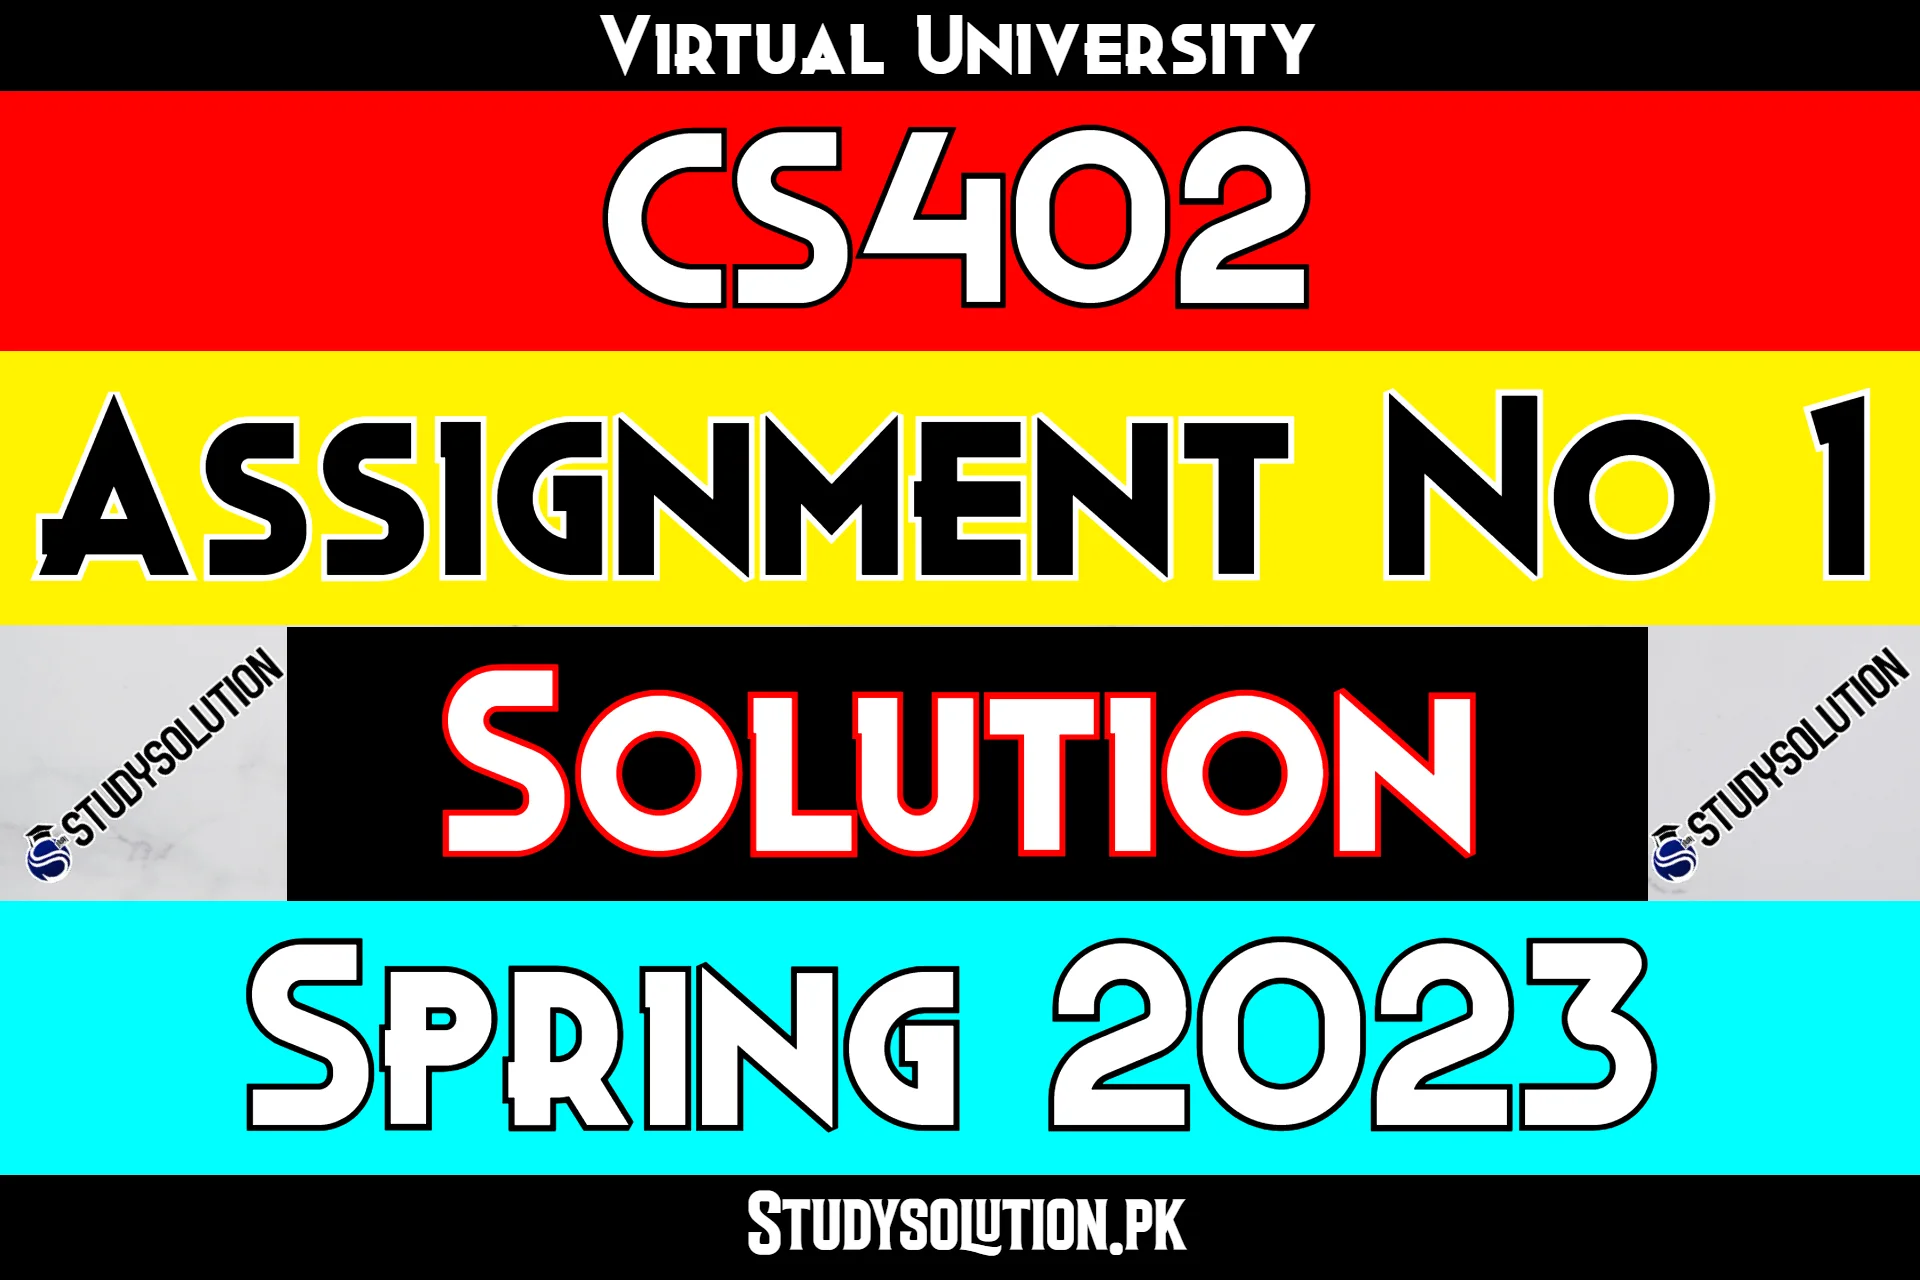 CS402 Assignment No 1 Solution Spring 2023